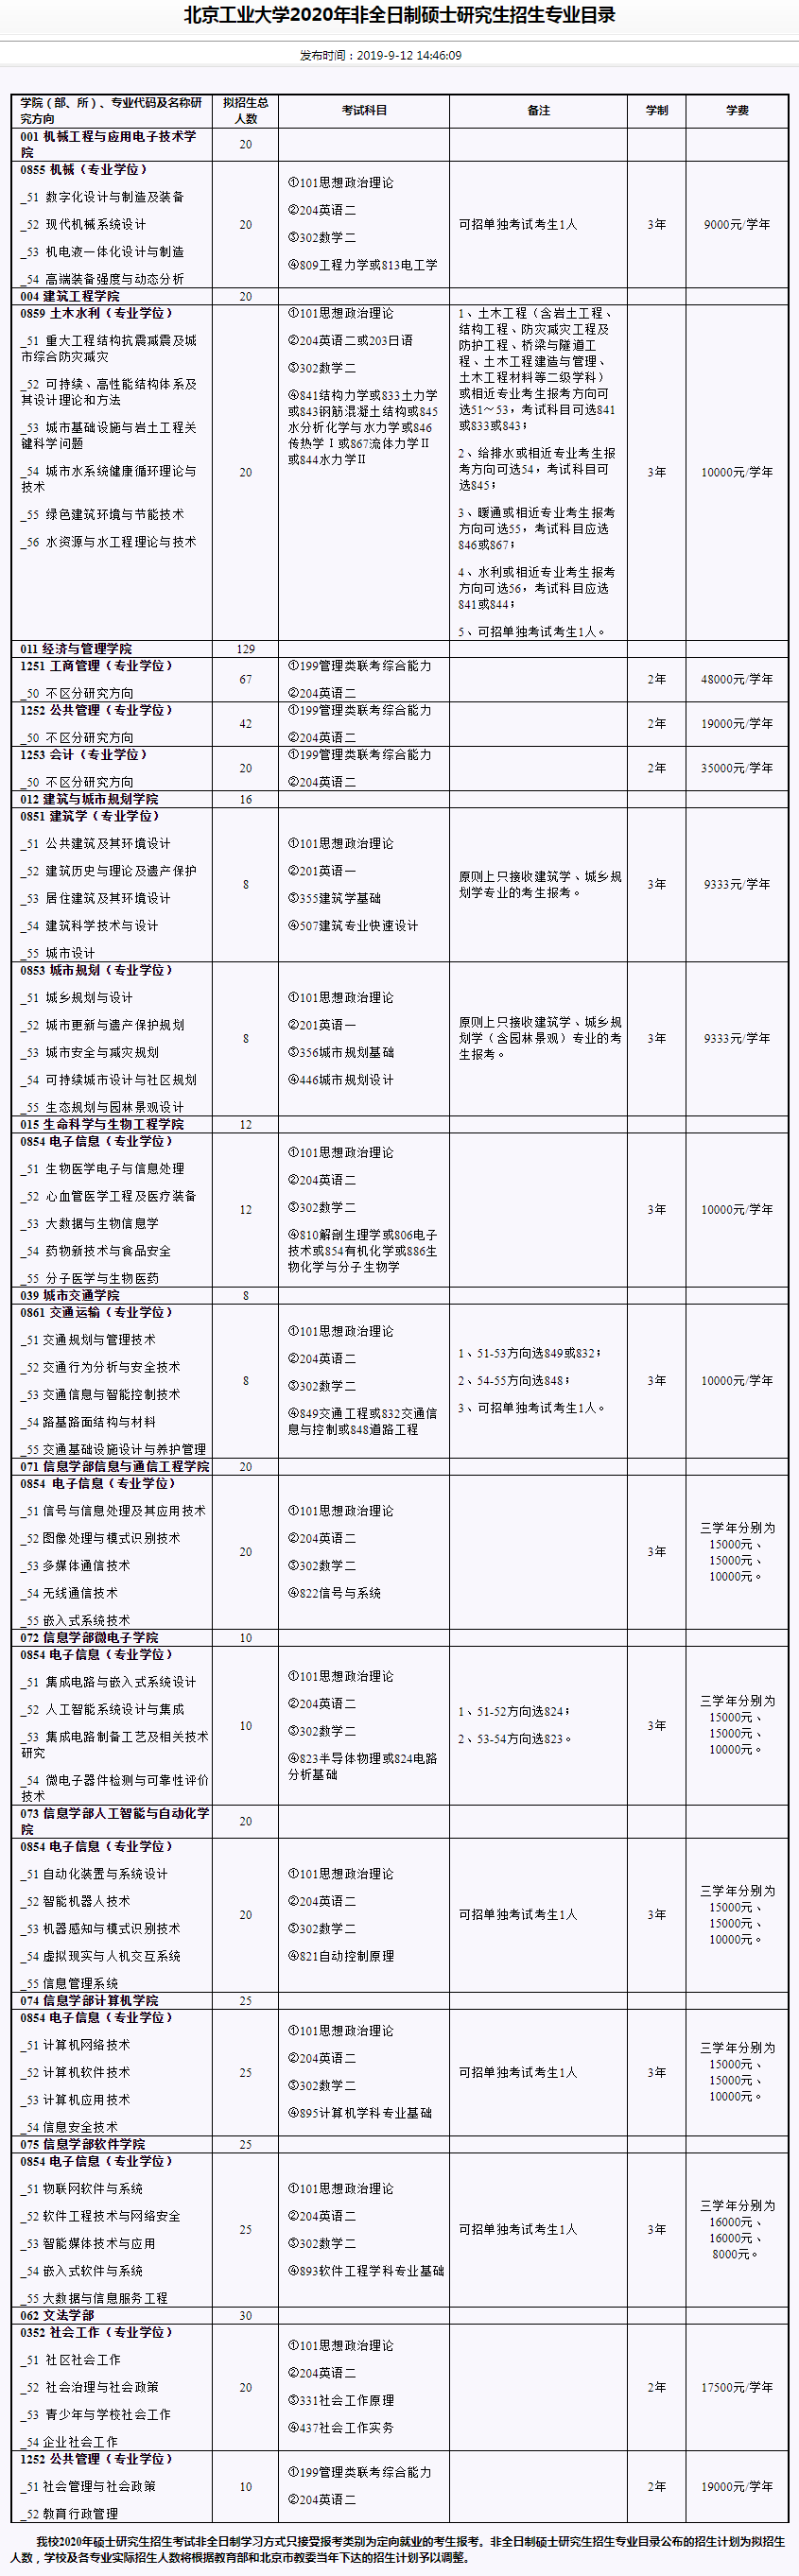 北京工业大学2020研究生招生专业目录（非全日制）